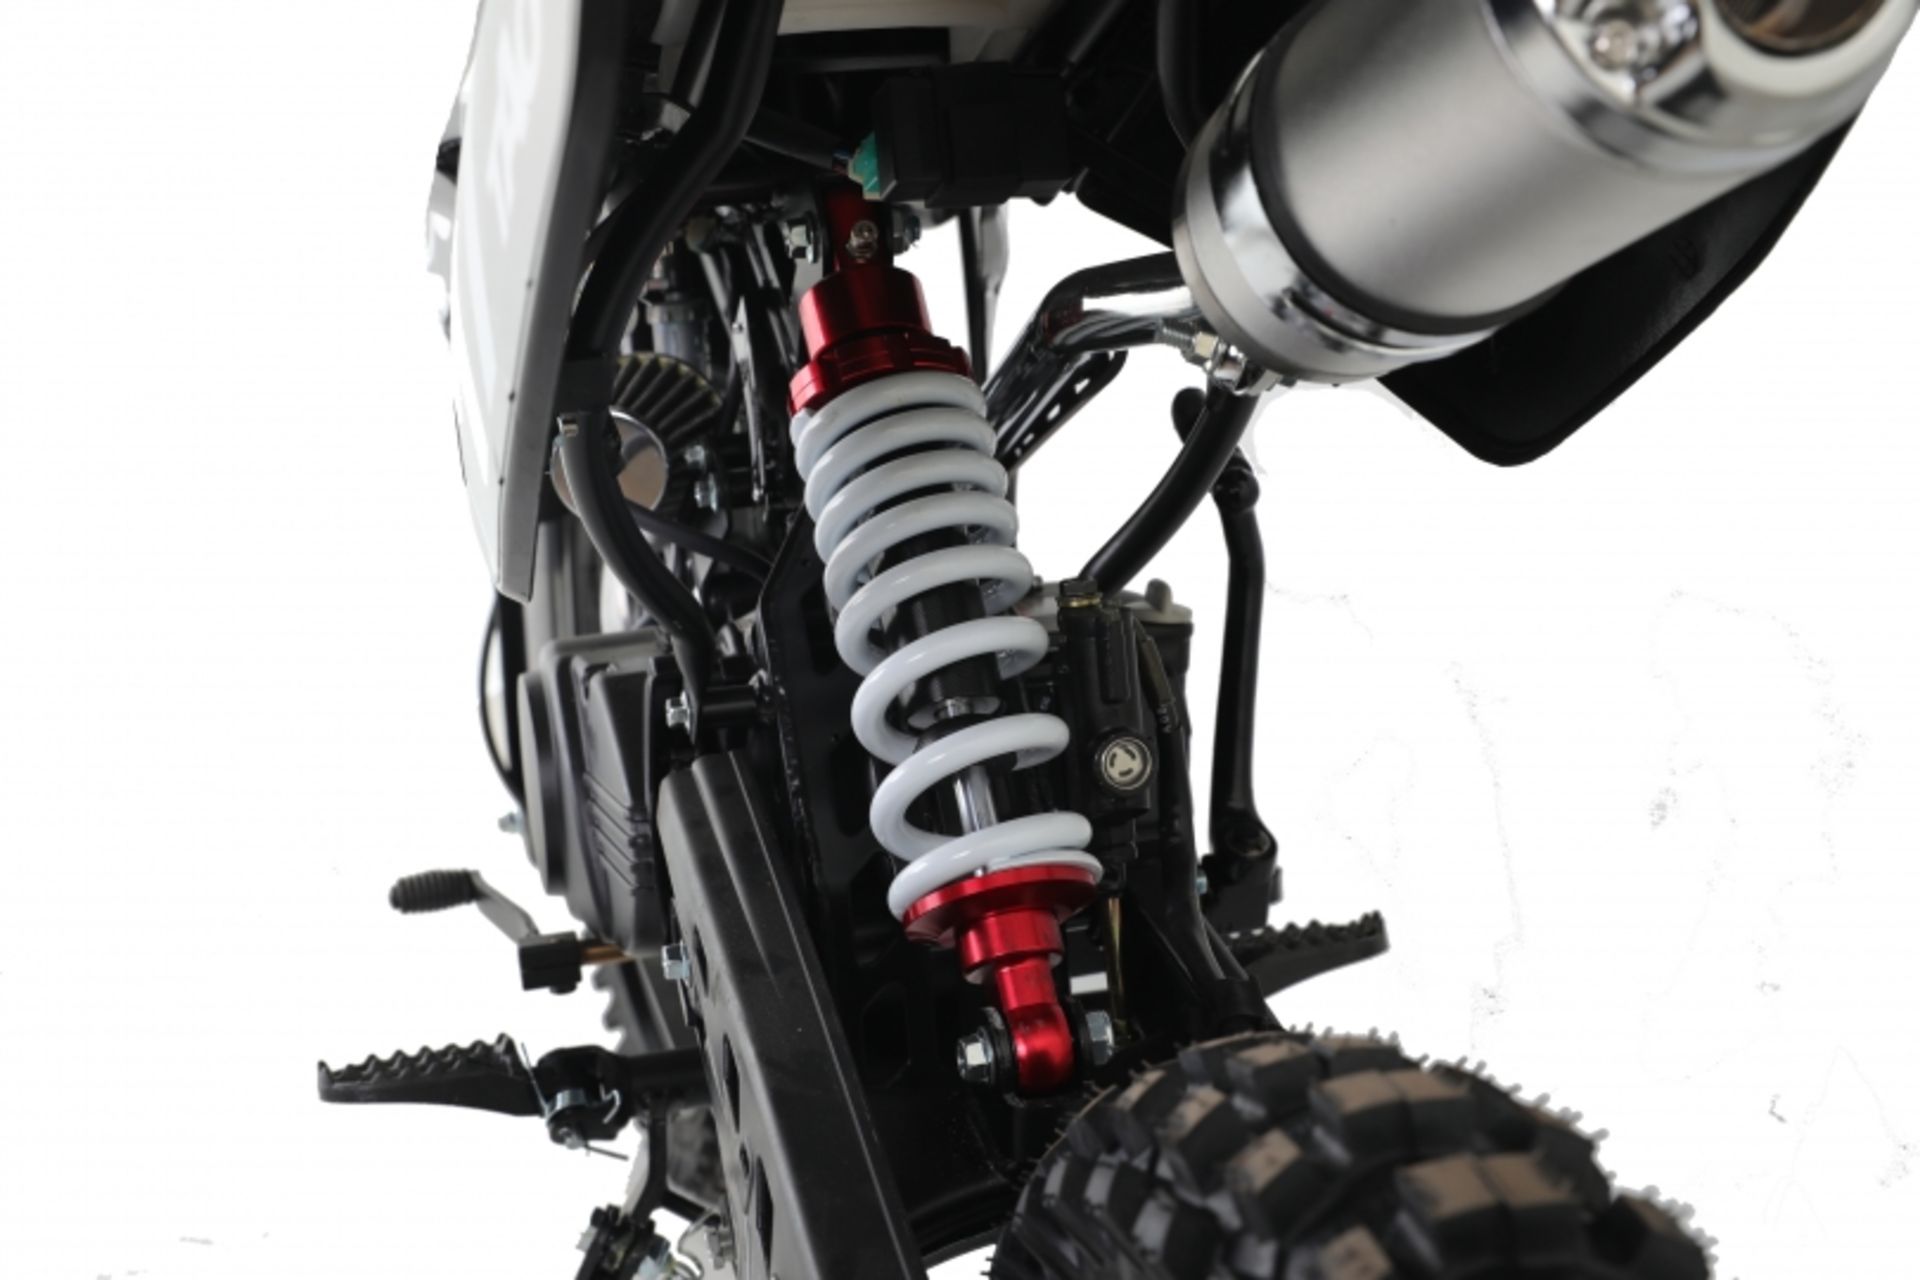 V Brand New 125cc USA Motocross Dirt Bike - Kick Start - Air Cooled - 4 Stroke - Full Suspension - - Image 4 of 5